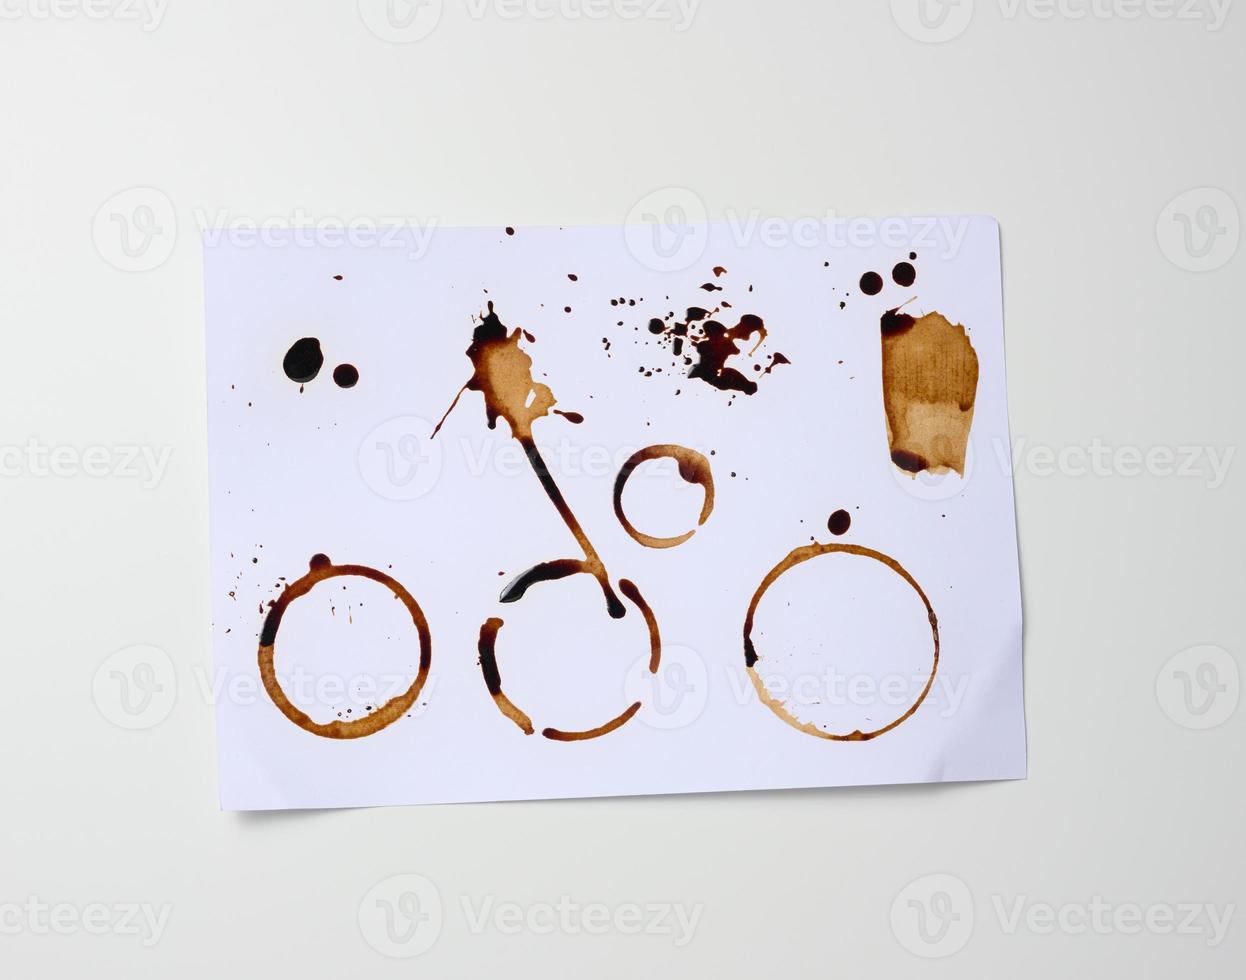 weißes blatt papier mit braunen drucken vom boden der tasse mit kaffee, flecken und spritzern foto